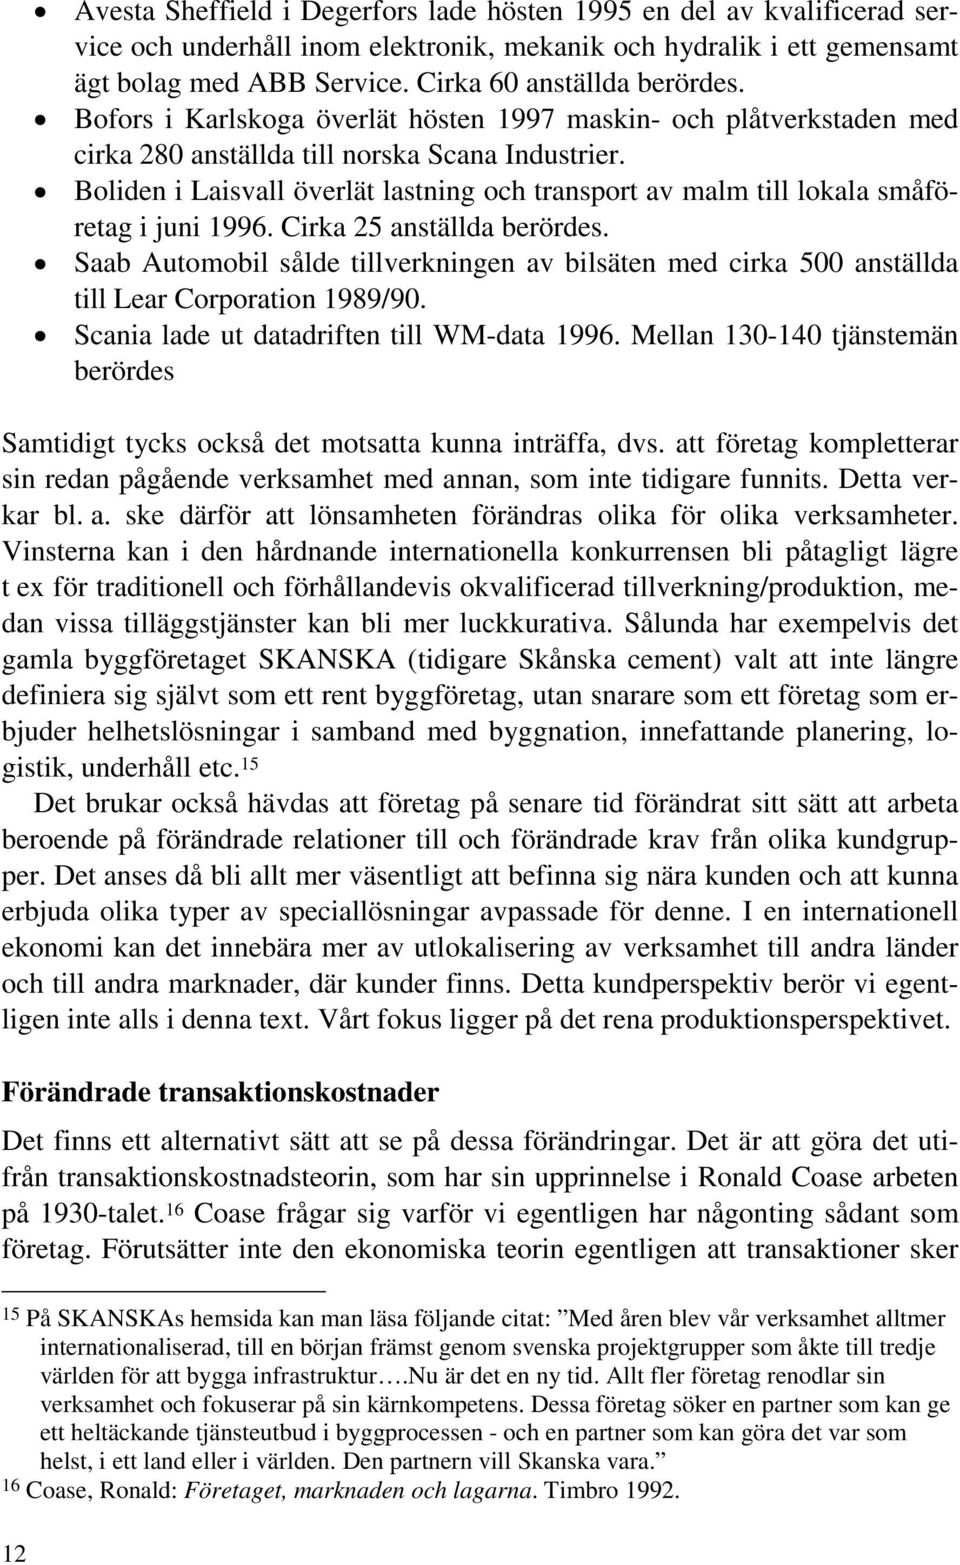 x Boliden i Laisvall överlät lastning och transport av malm till lokala småföretag i juni 1996. Cirka 25 anställda berördes.